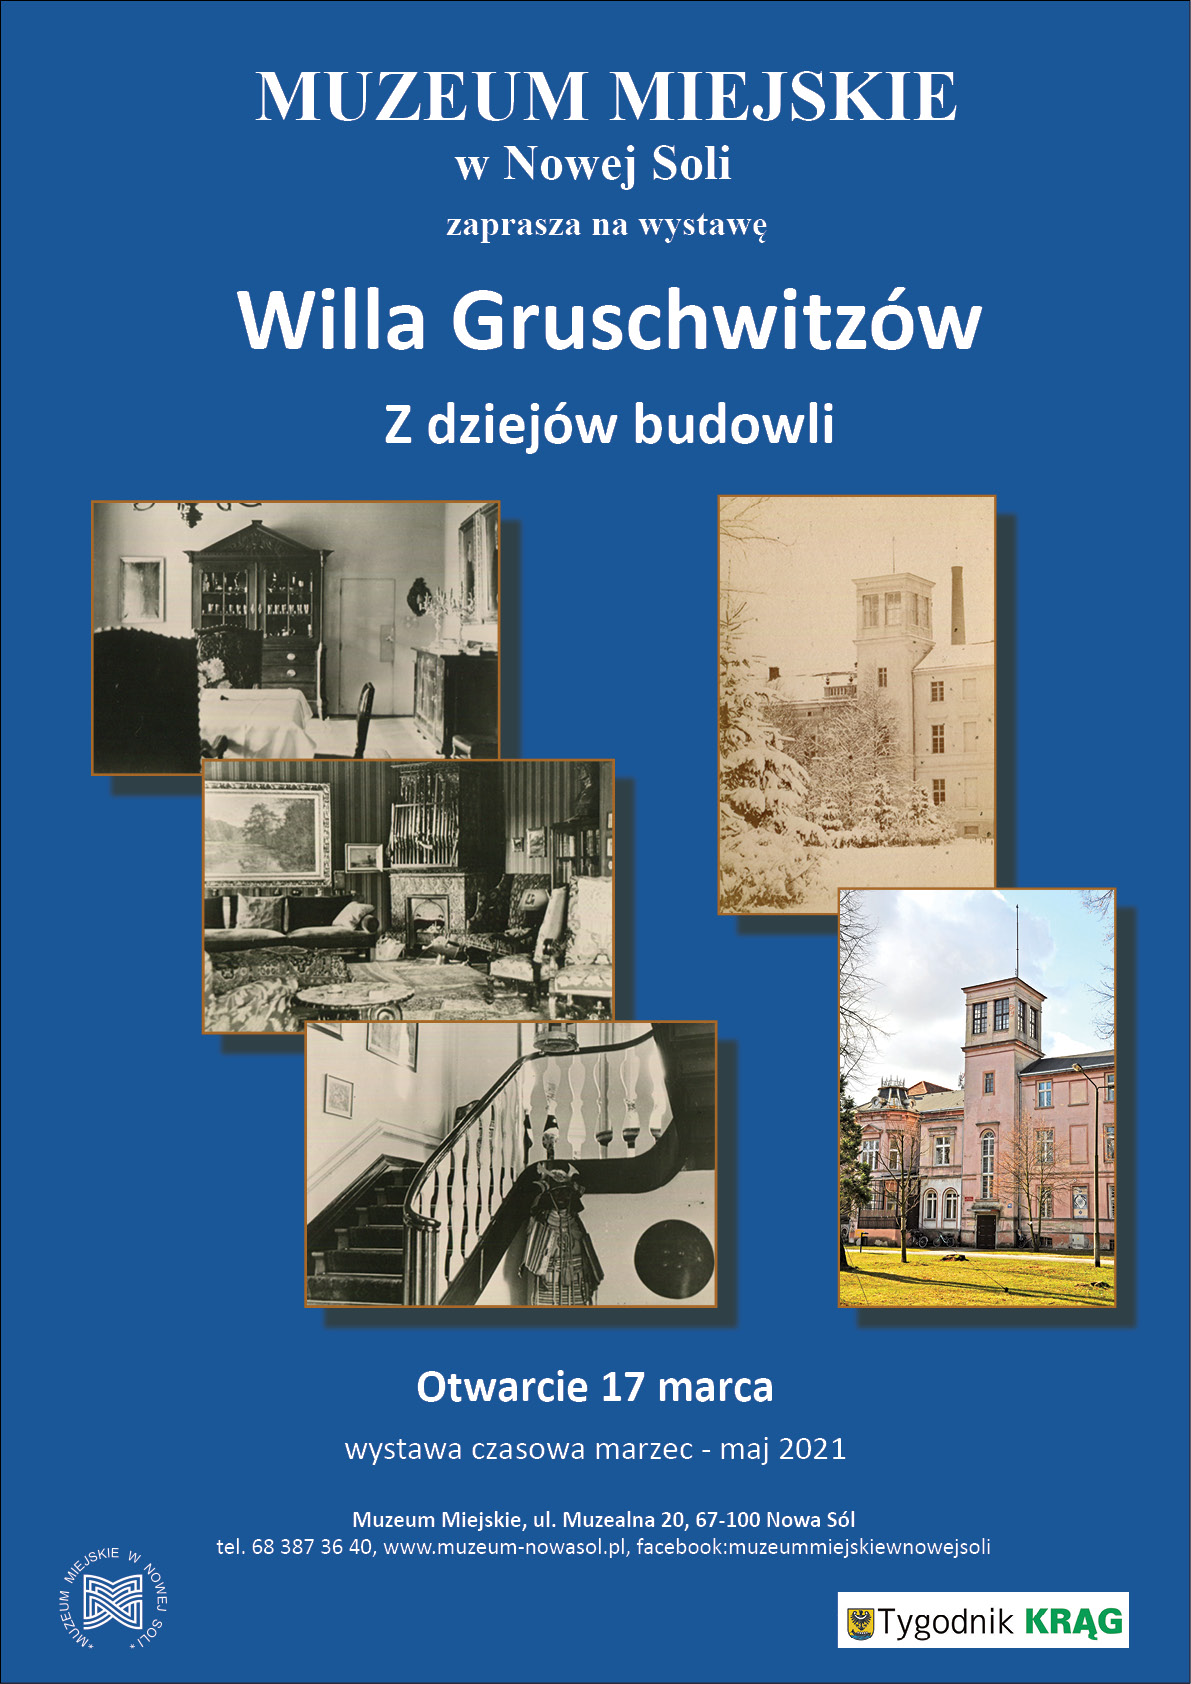 Willa Gruschwitz - Z dziejów budowli